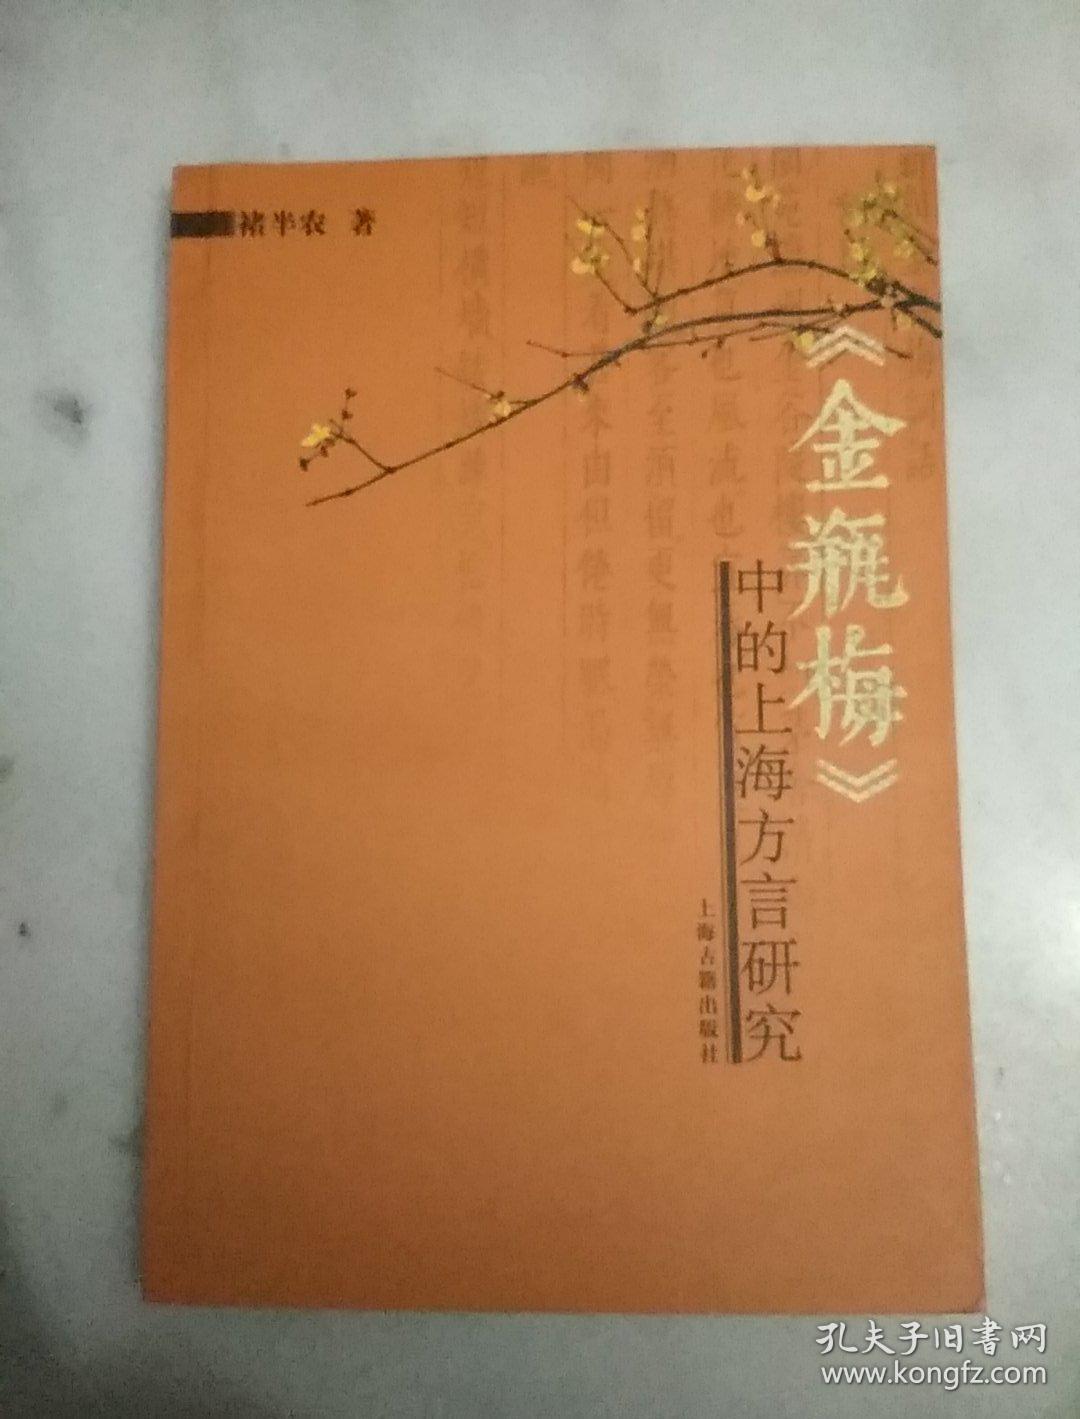 《金瓶梅》中的上海方言研究